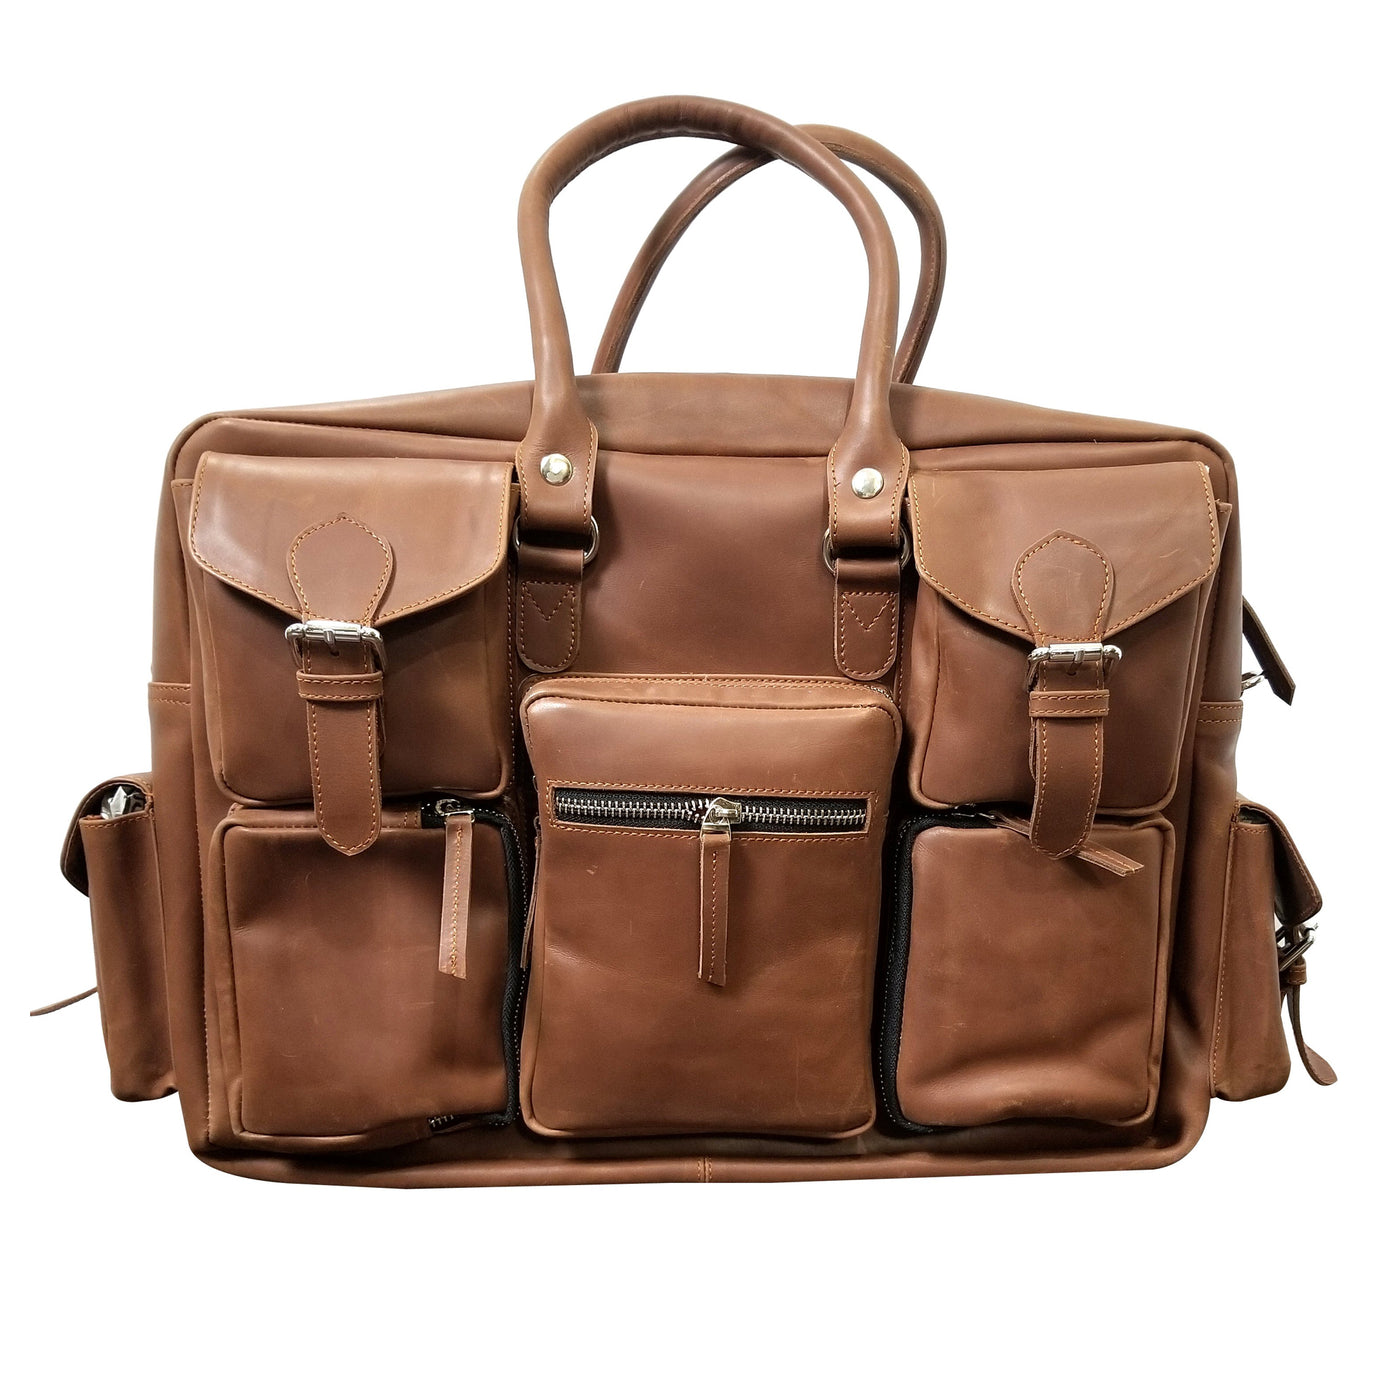 Excellent Design & Comfort Traveler Messenger bag